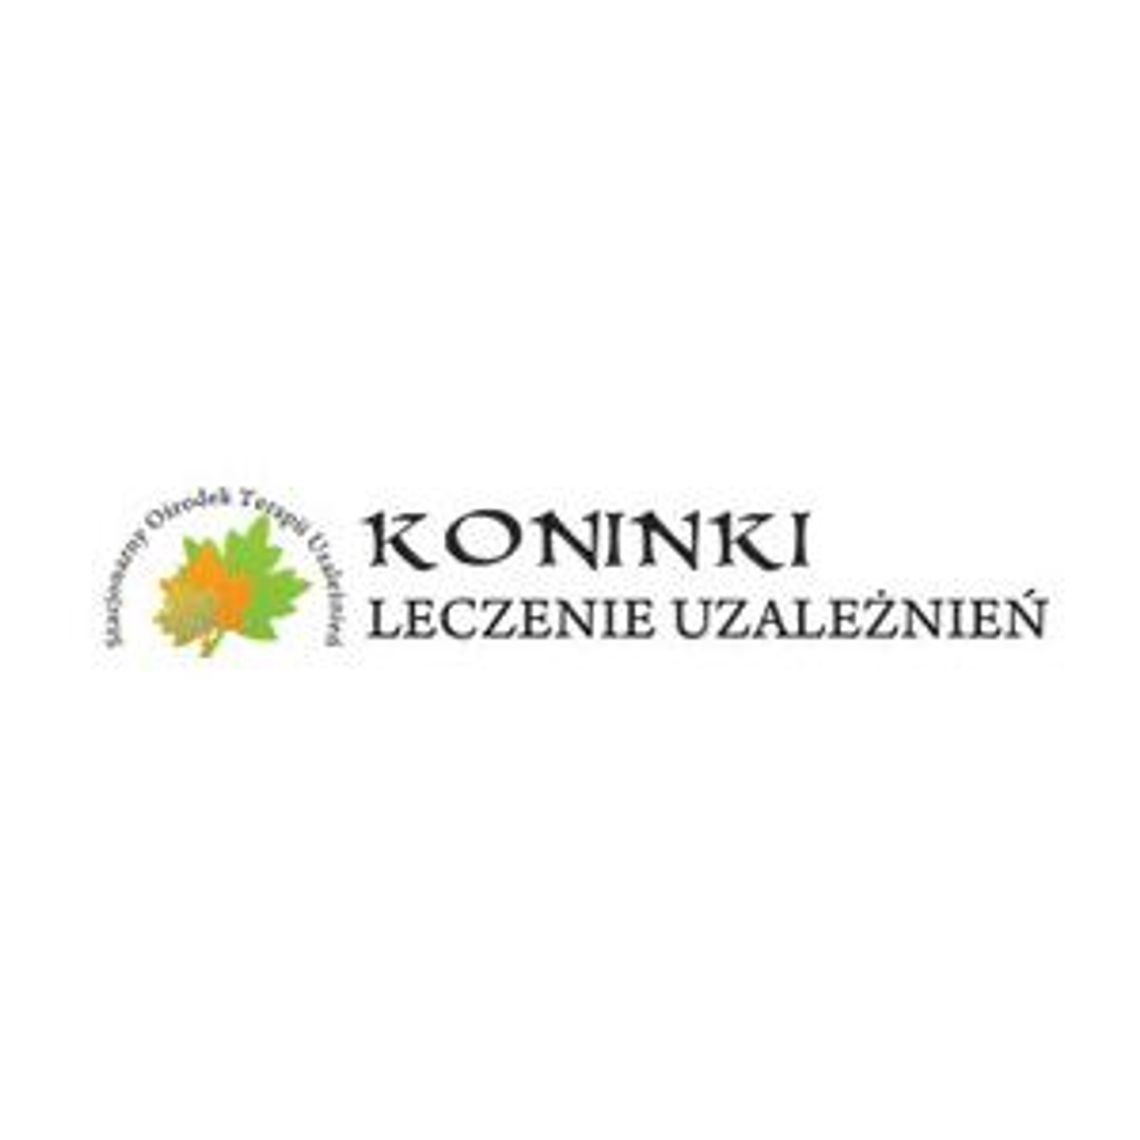 Prywatny Ośrodek Terapii Uzależnień - PCTU Koninki